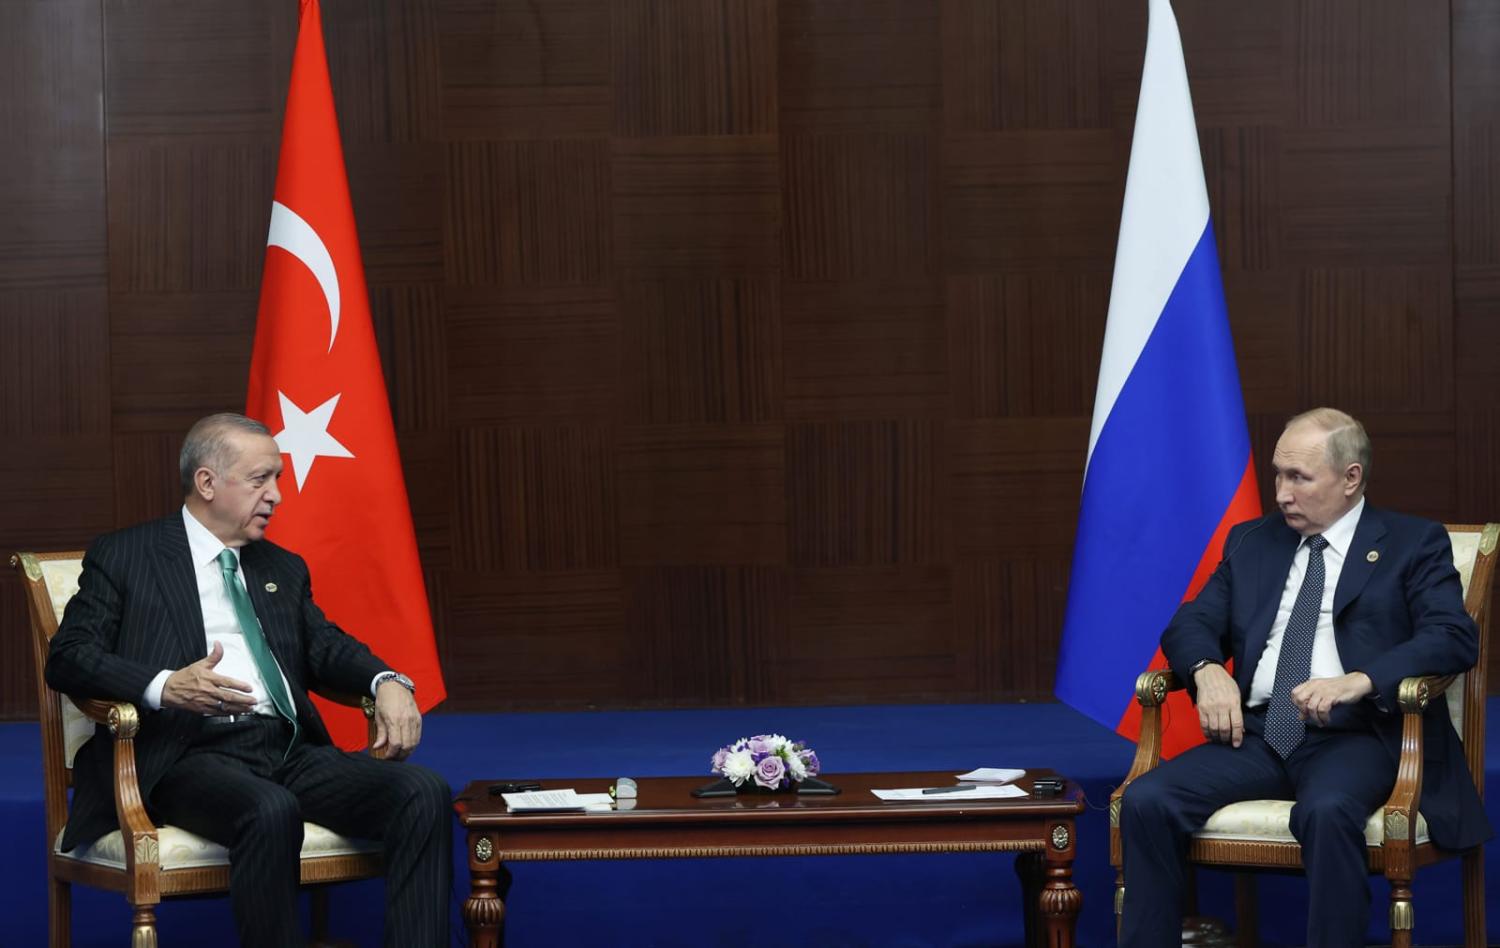 Erdoğan and Putin meeting in Astana, Kazakhstan in October last year (Murat Kula/Anadolu Agency via Getty Images)